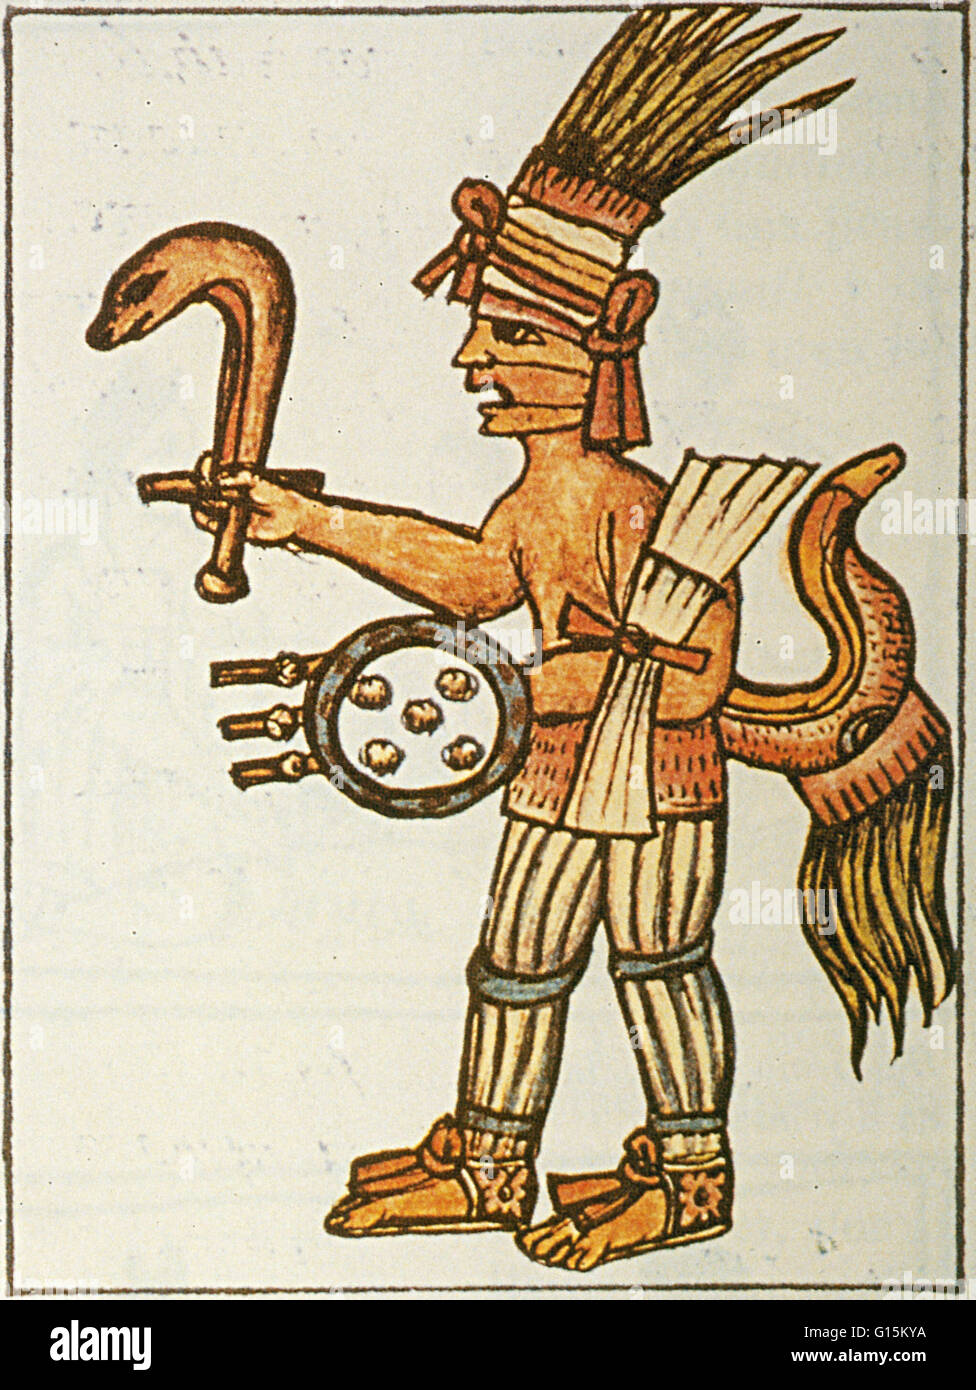 Huitzilopochtli con il fuoco serpente, dal Codice Fiorentino. Nella religione azteca, Huitzilopochtli era un dio della guerra, sun, sacrificio umano e il patrono della città di Tenochtitlan. Egli è stato anche il dio nazionale dei Mexicas di Tenochtitlan. Huitzilopochtl Foto Stock